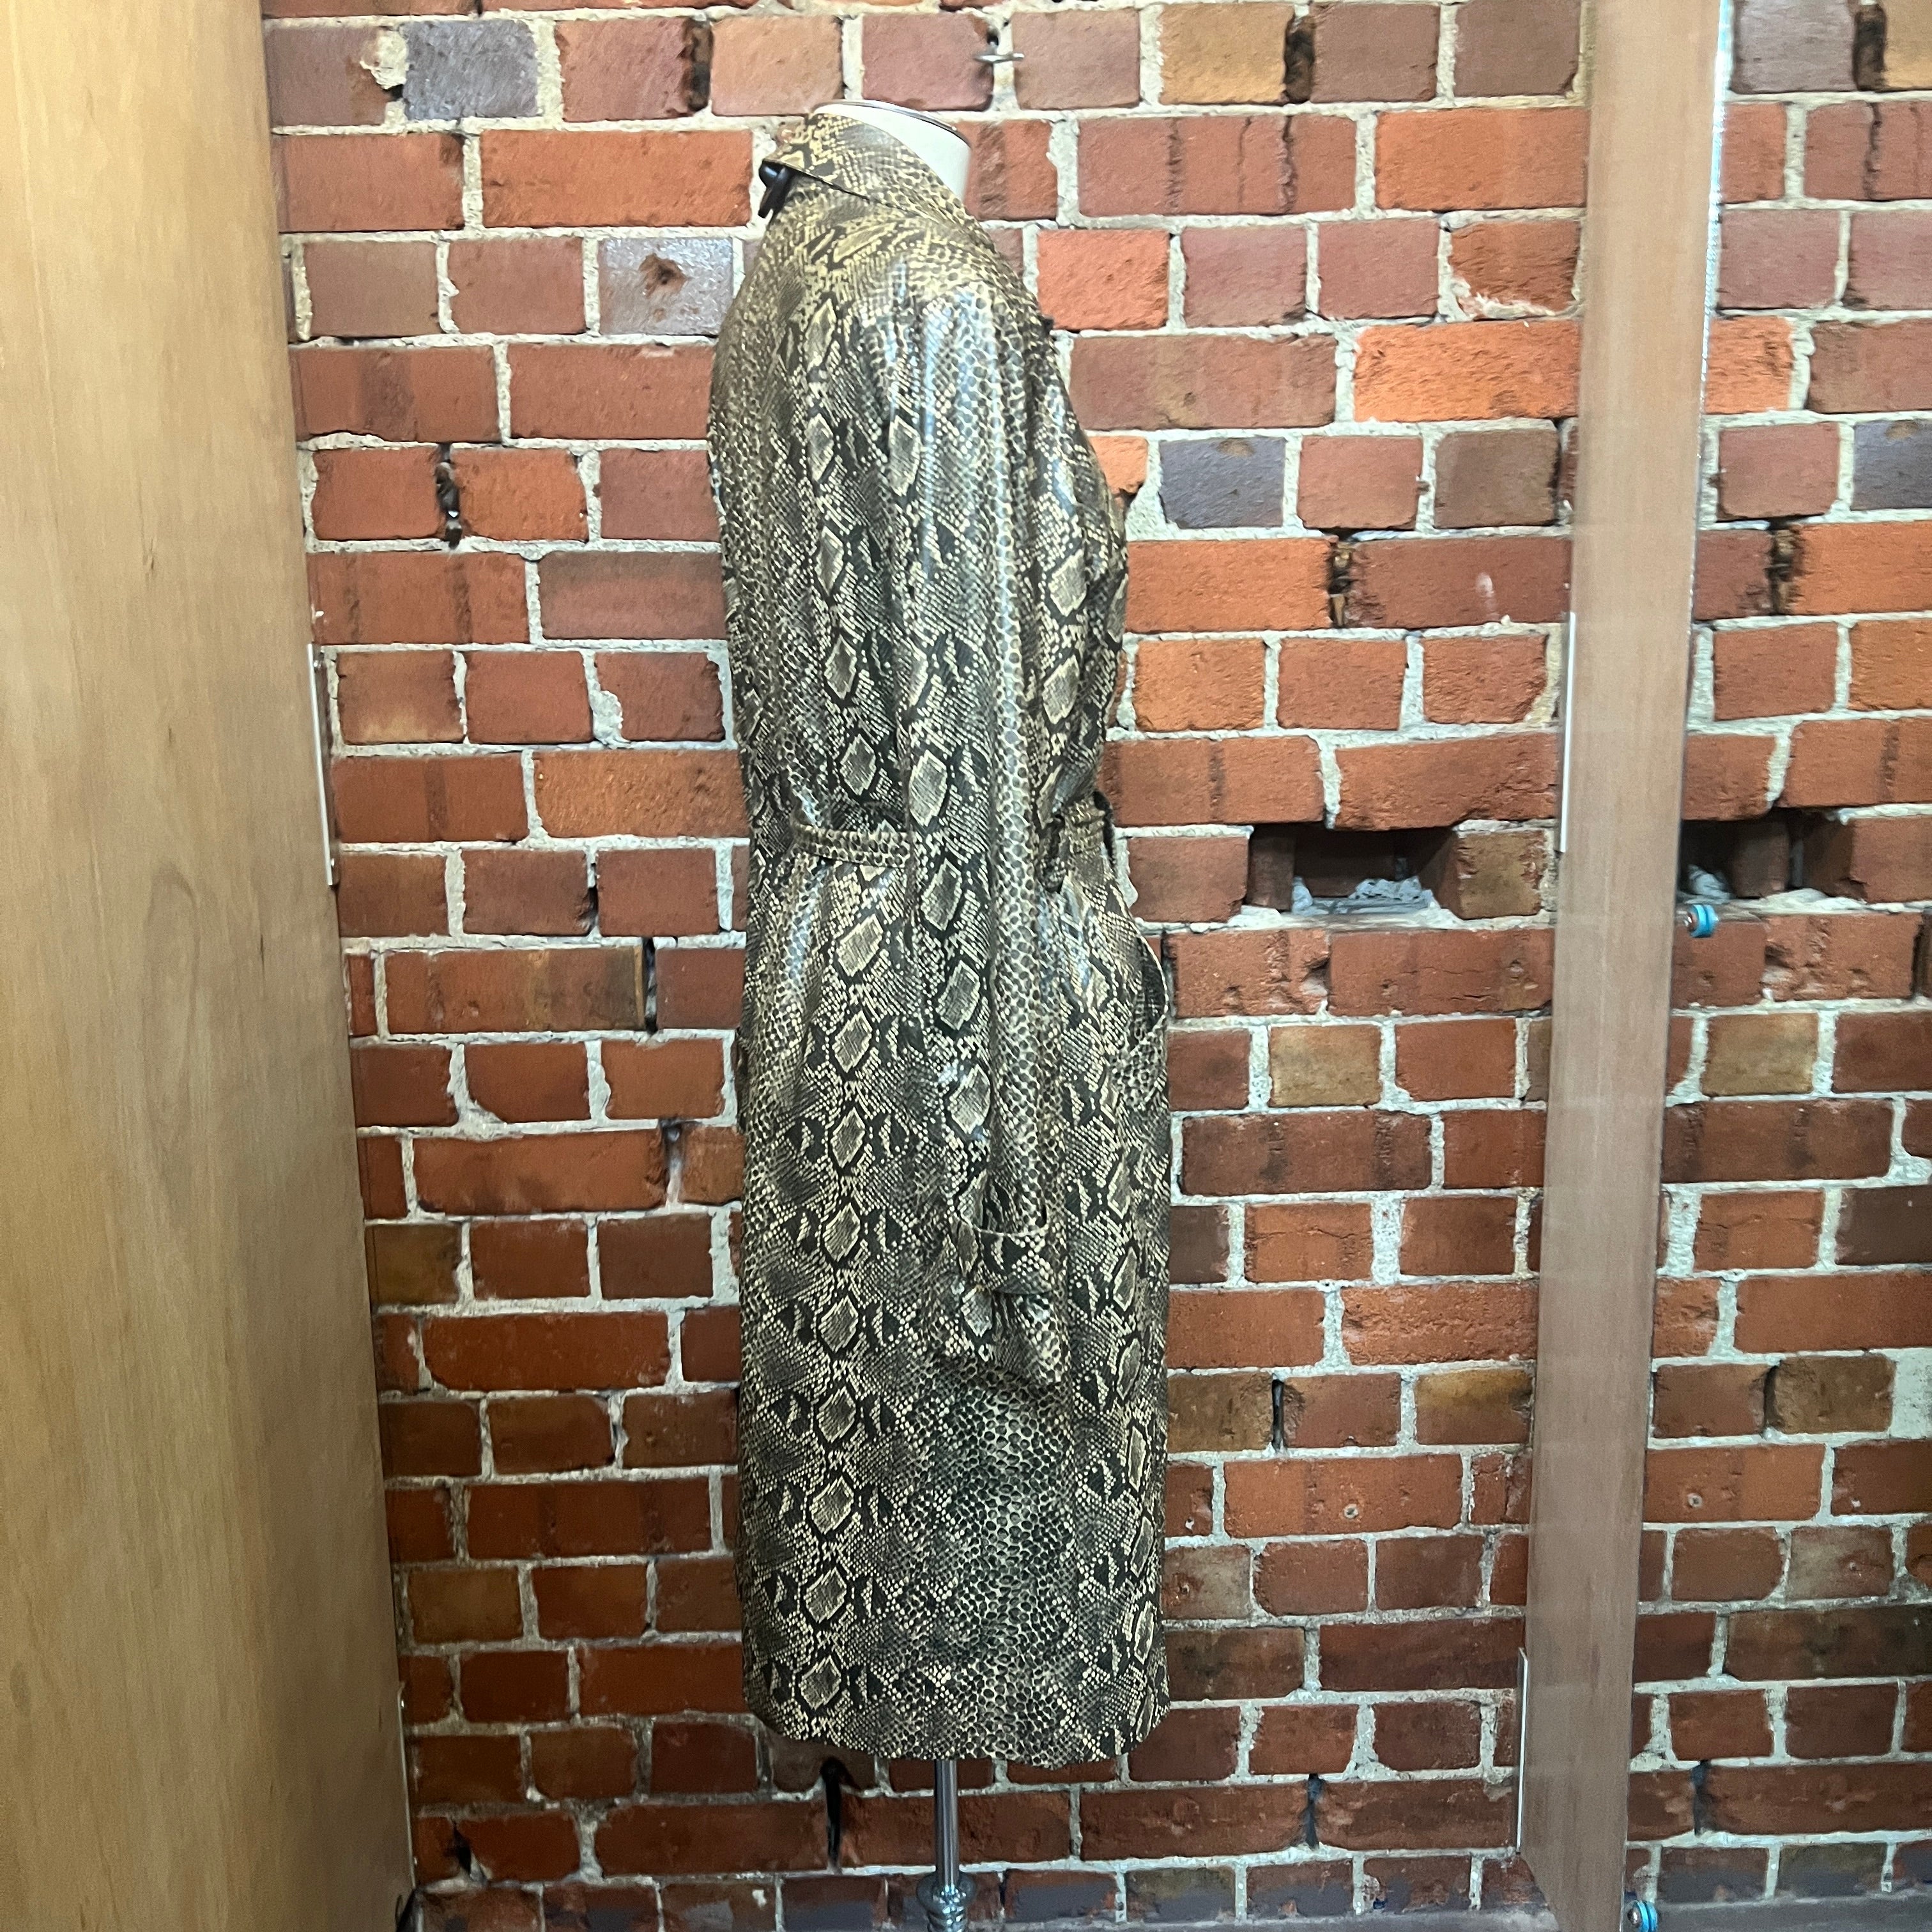 SNAKESKIN vinyl trench coat